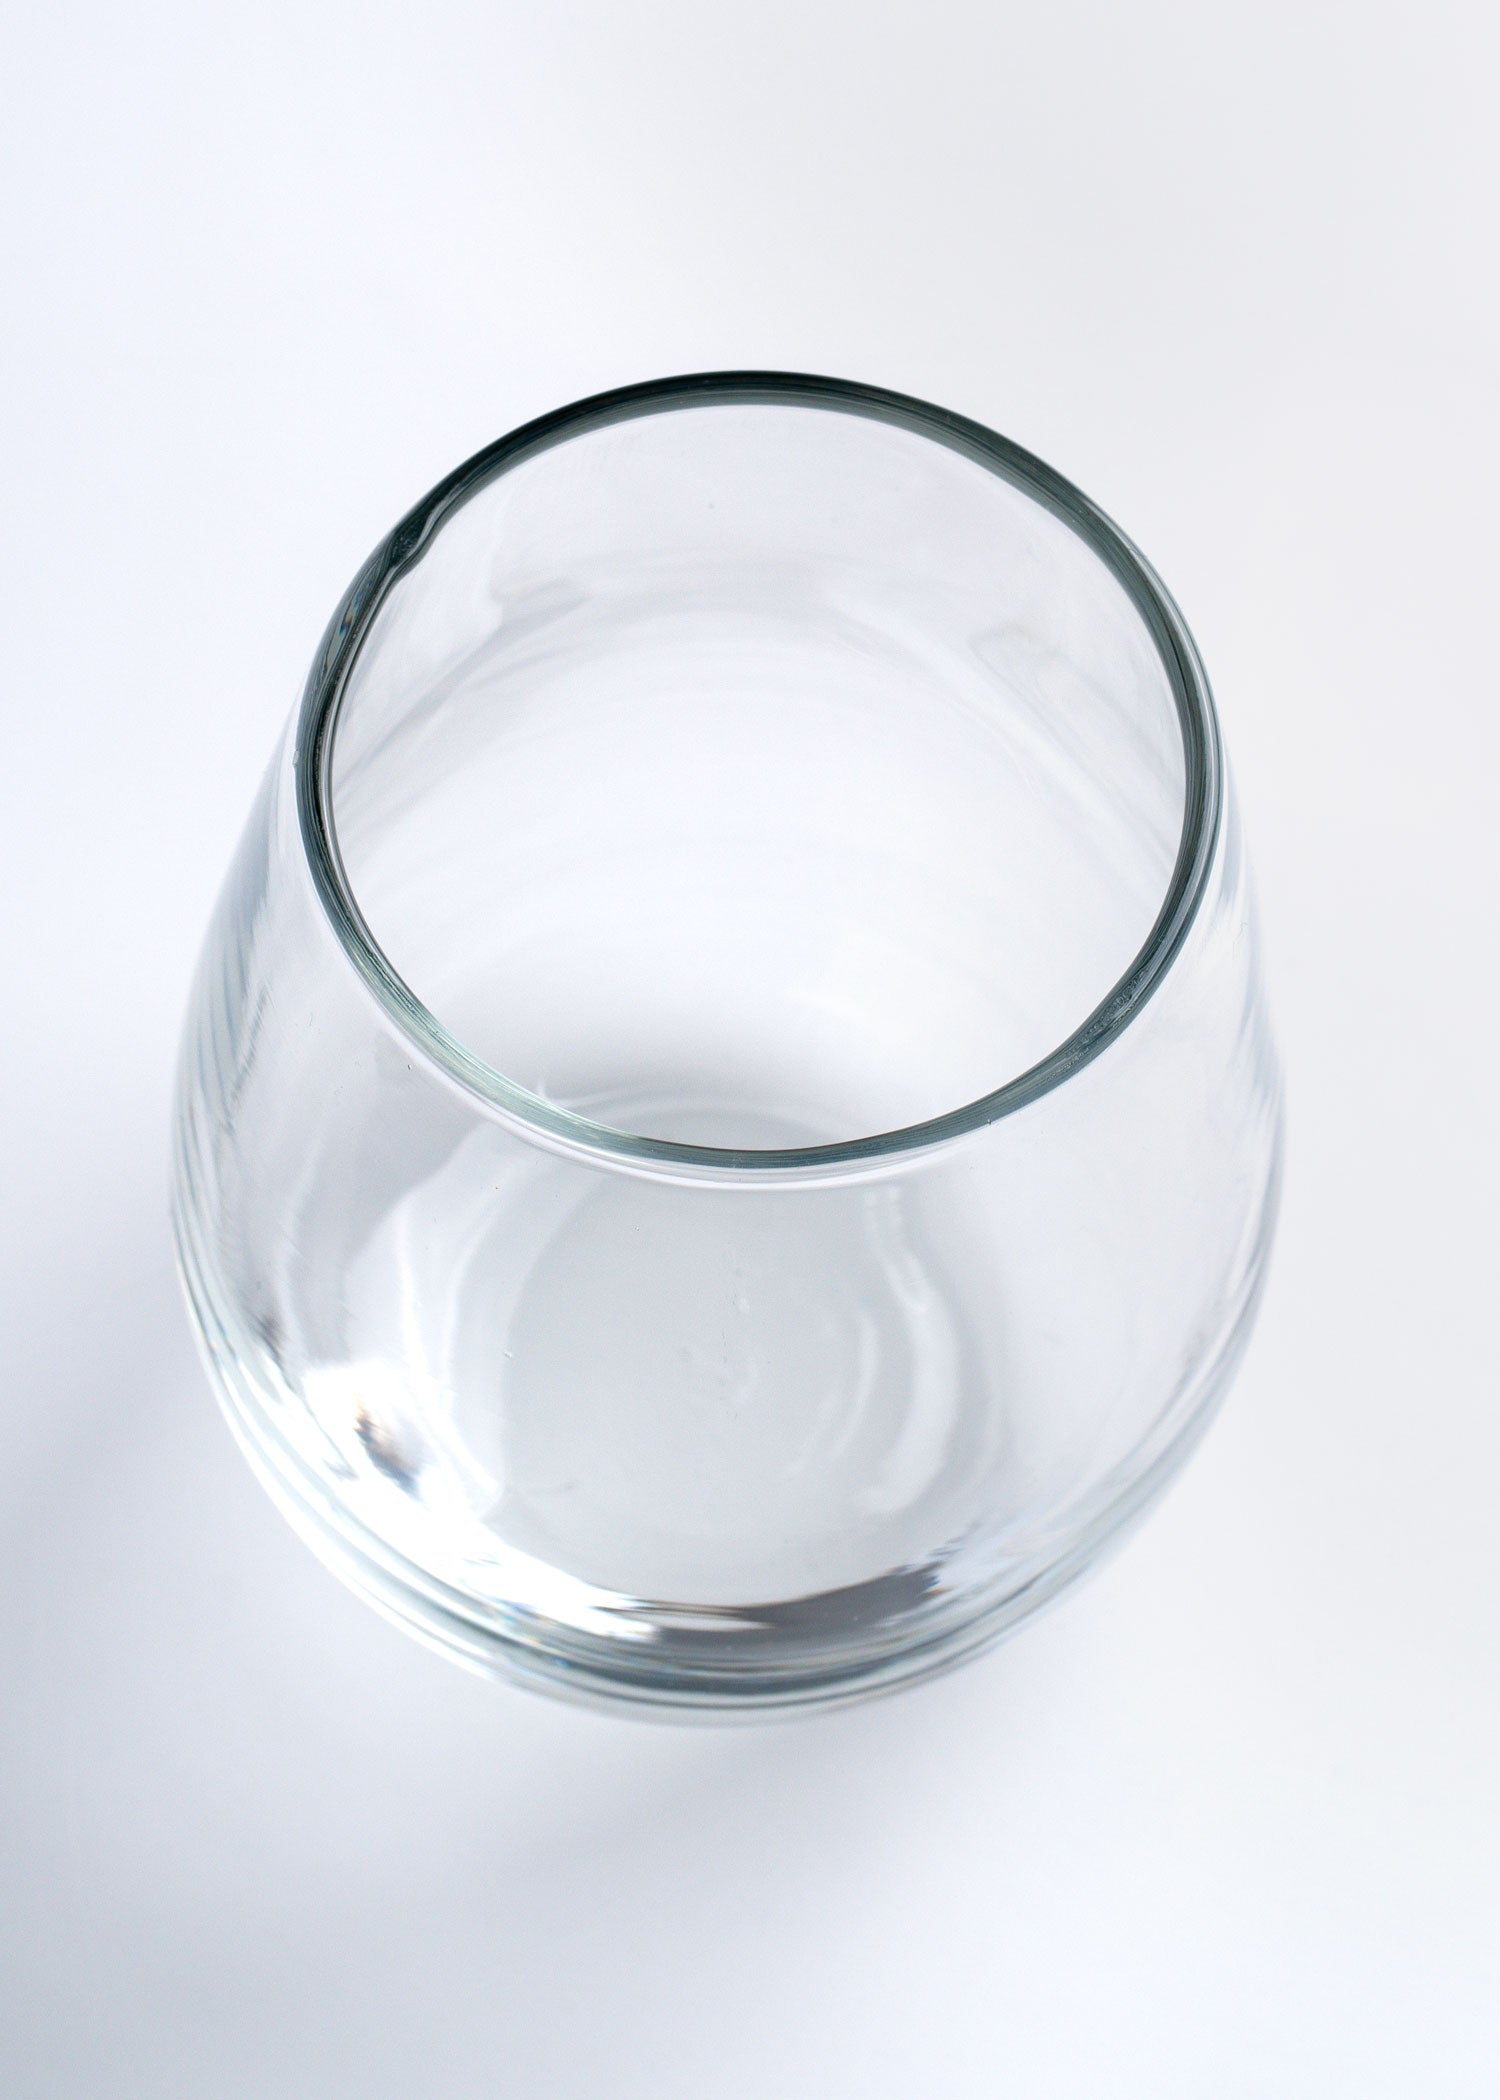 vaso vidrio precio mayoreo maha